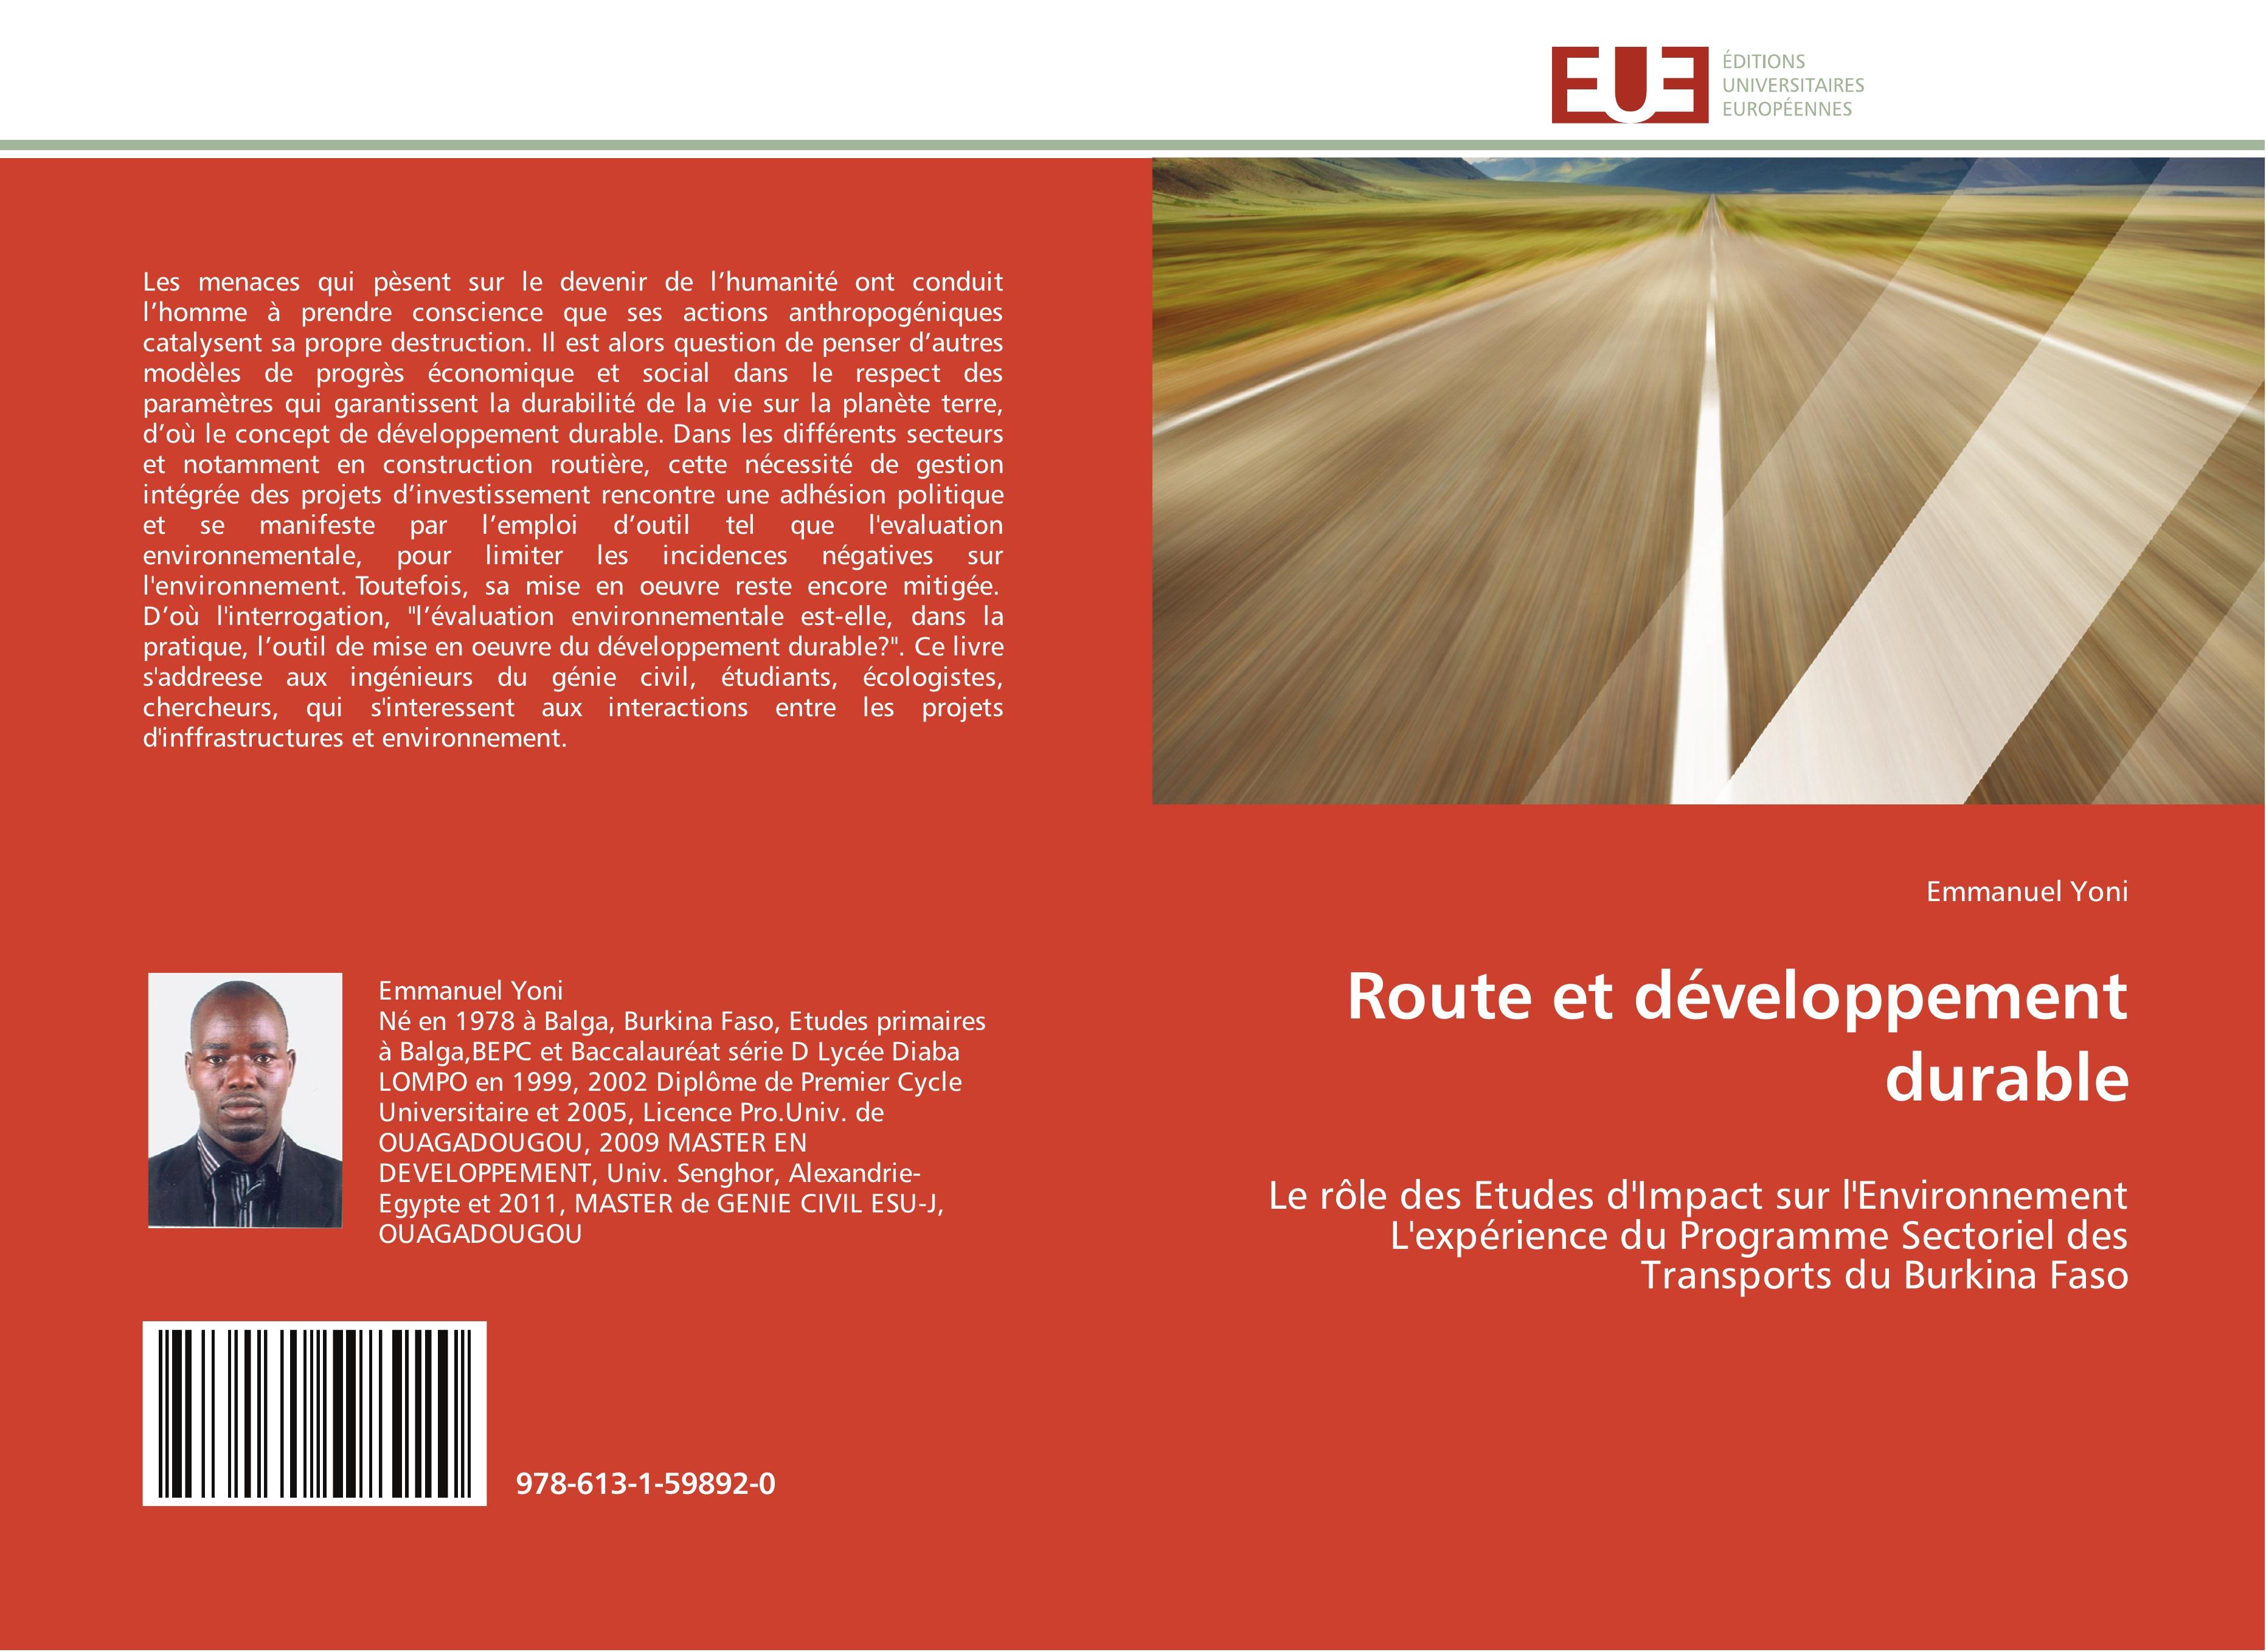 Route et développement durable - Emmanuel Yoni